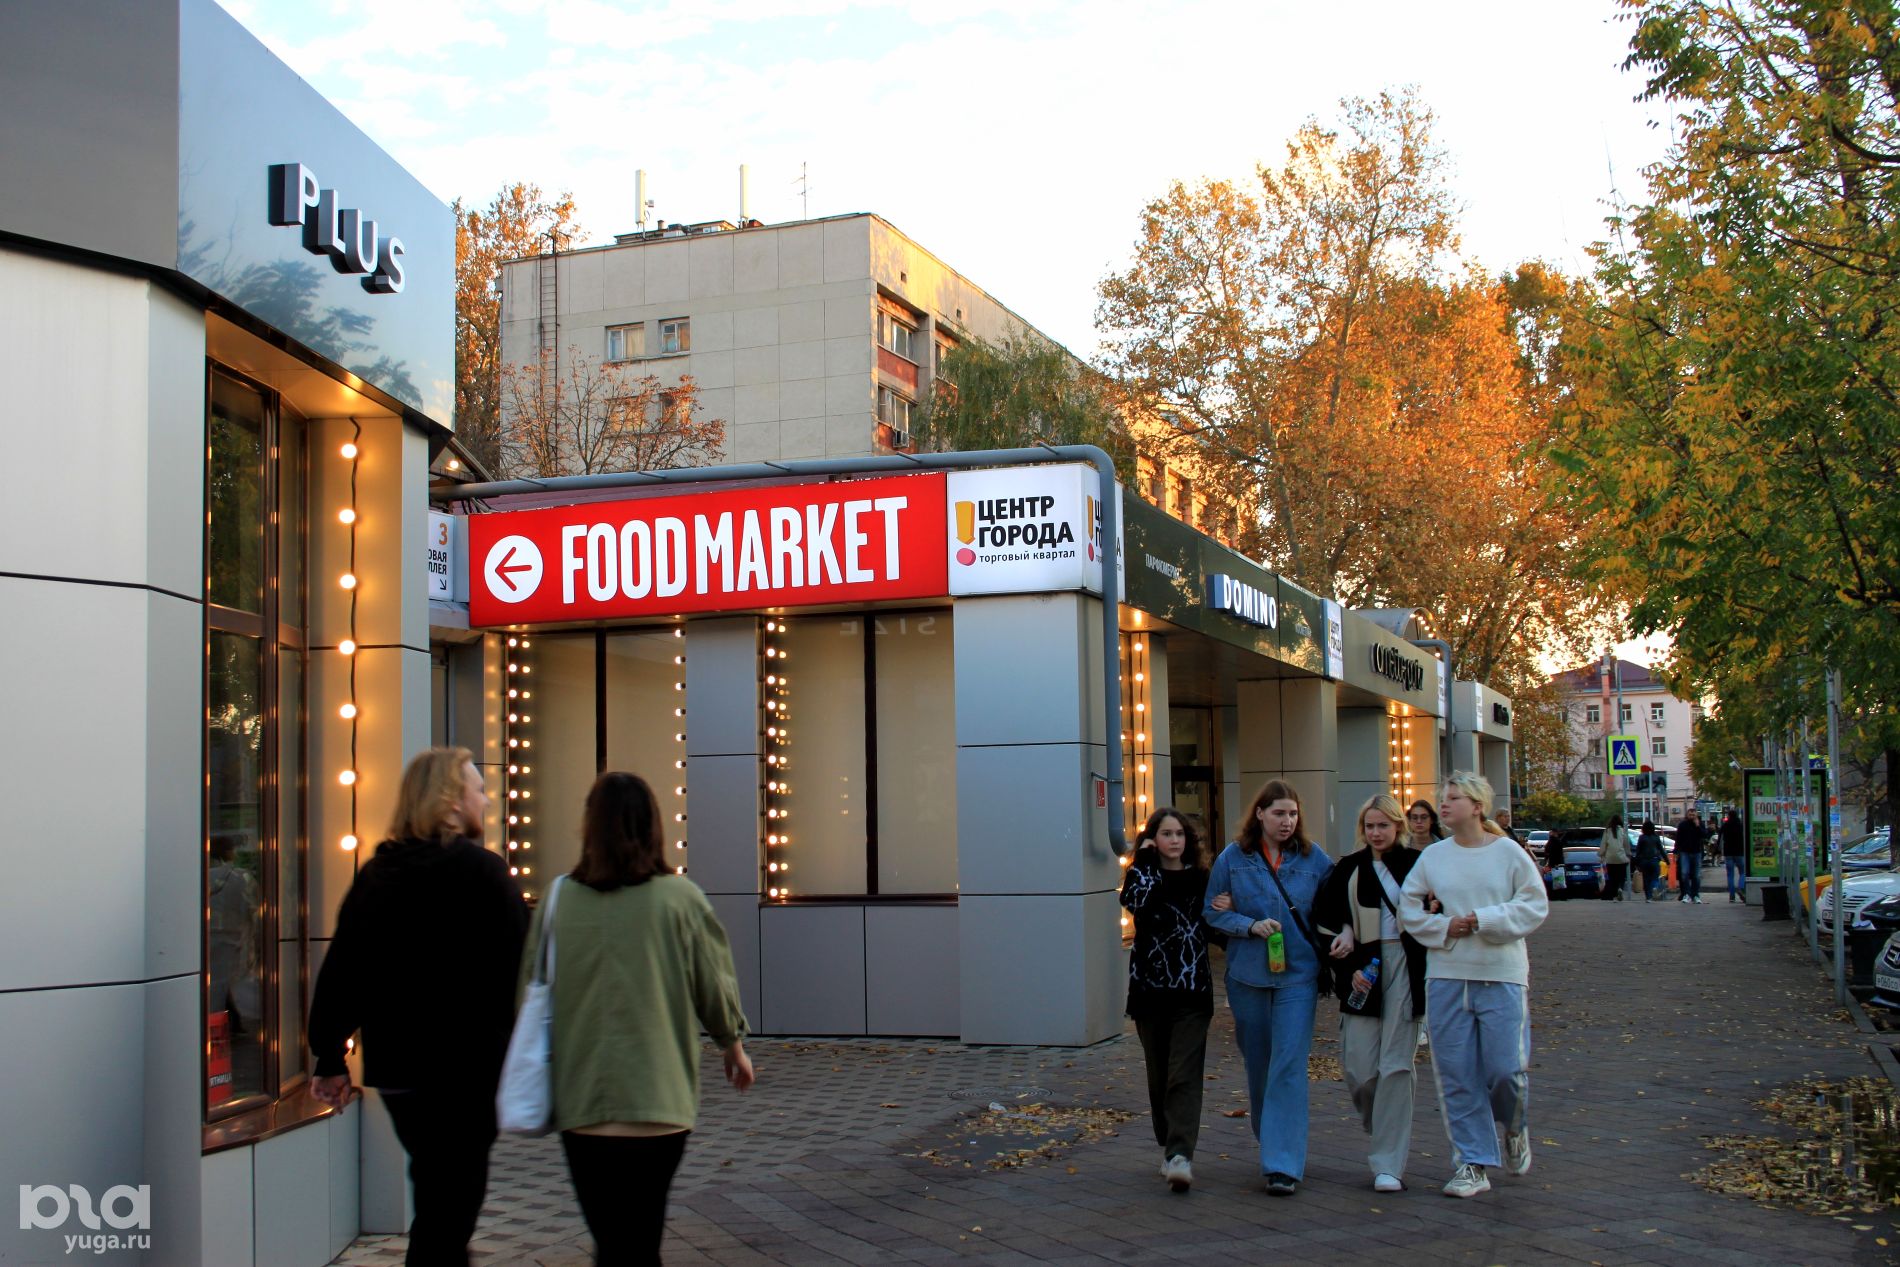 Зайти в «FOODMARKET Центр города» с улицы Красной можно через торговые аллеи  © Фото Марины Солошко, Юга.ру